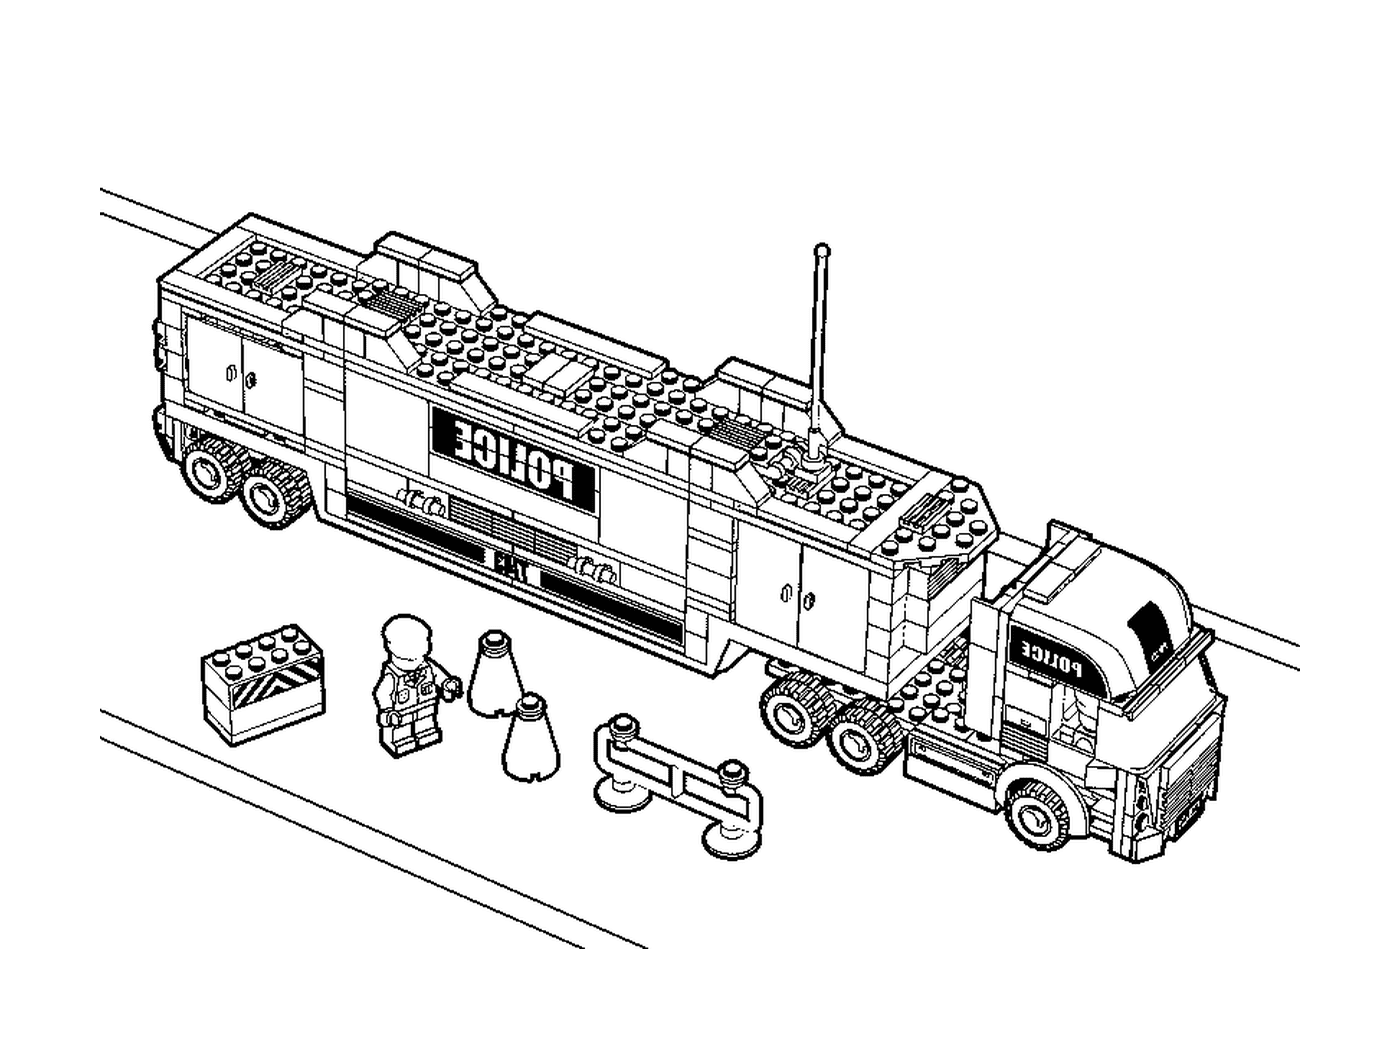  Lego camion della polizia in questa immagine 